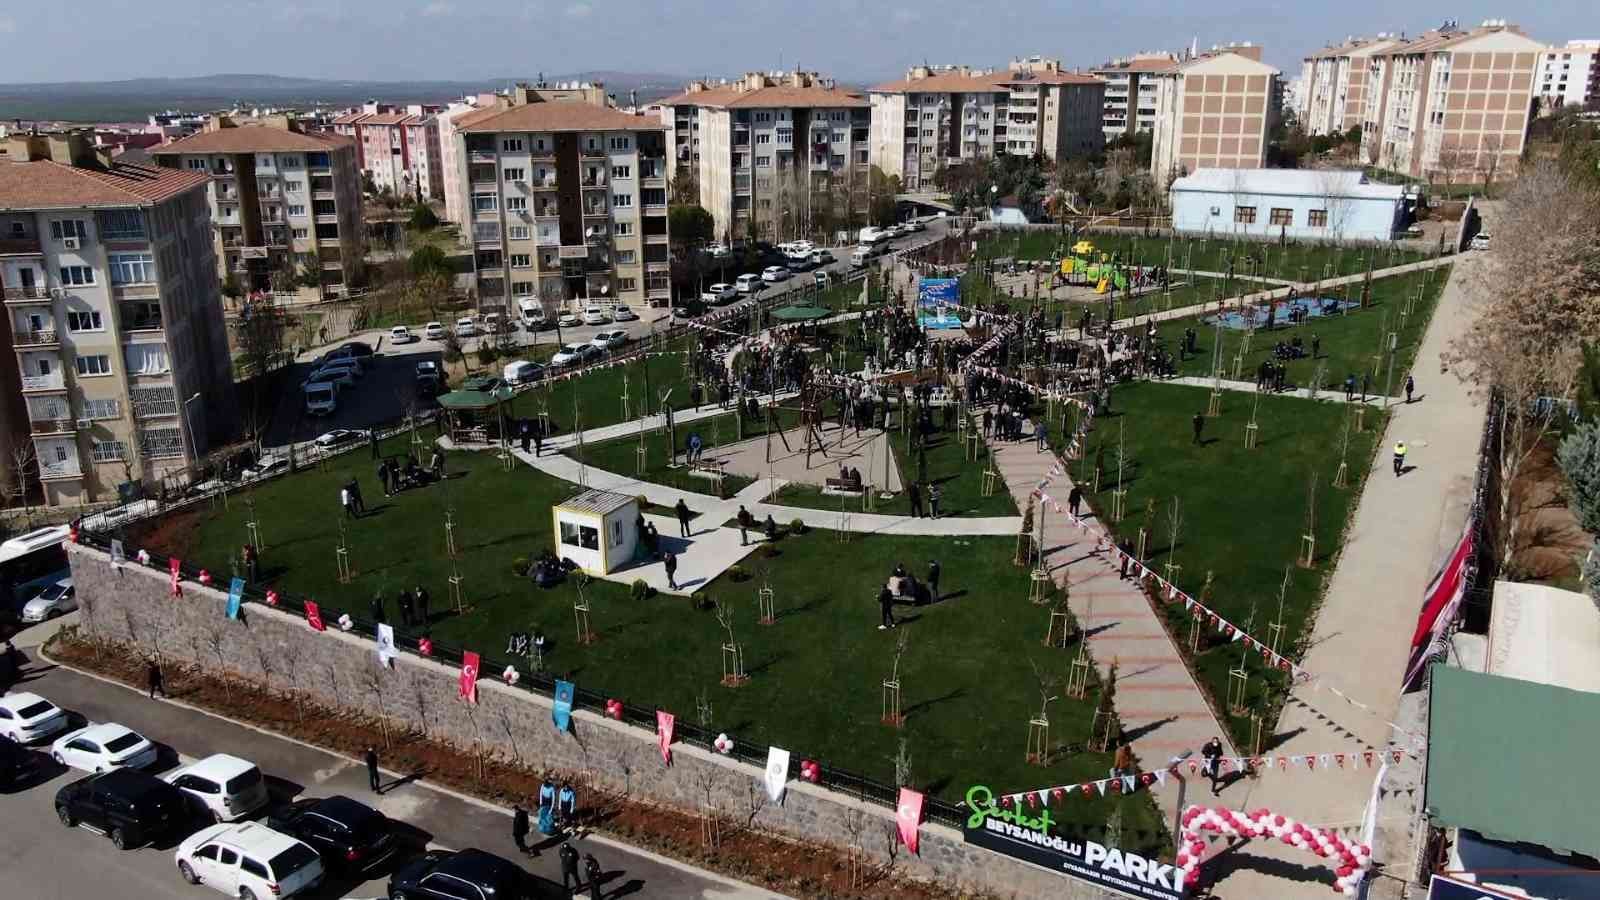 Diyarbakır Büyükşehir Belediyesi’nden Şevket Beysanoğlu’na vefa örneği #diyarbakir